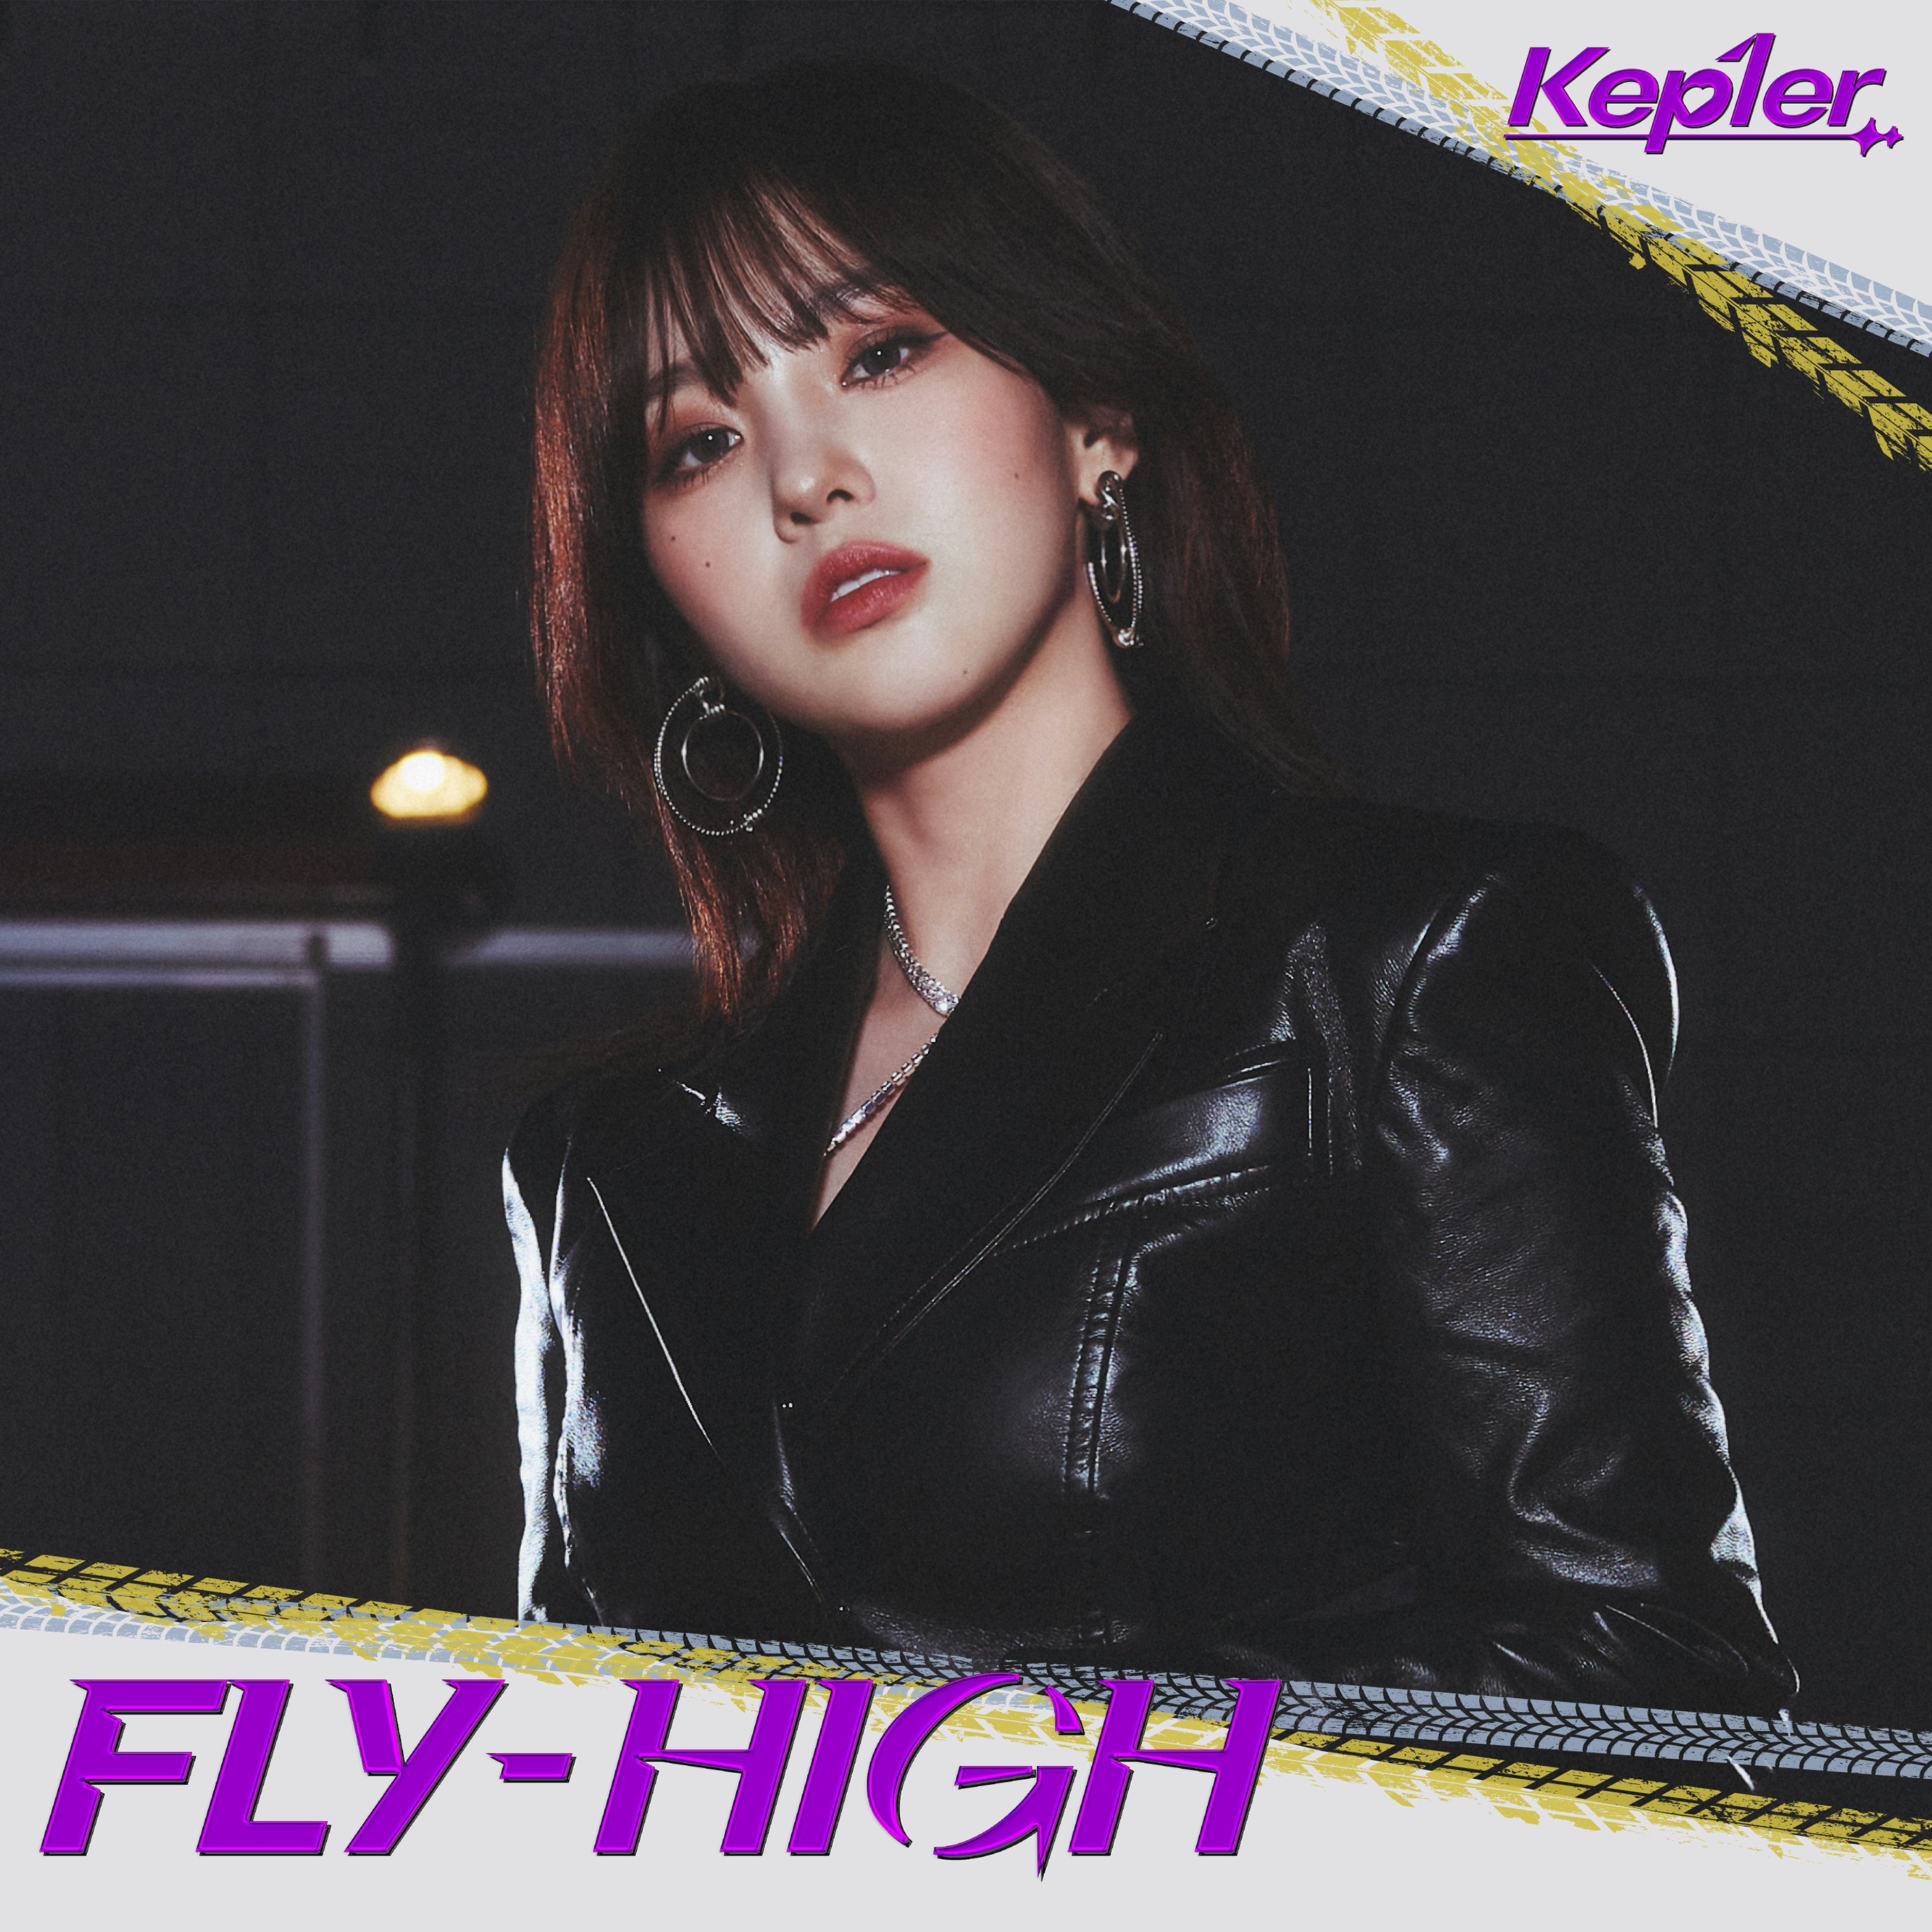 FLY-HIGH>【Kep1ian盤 (CHAEHYUN ver.)】 - 【Kep1ian Japan】Kep1er